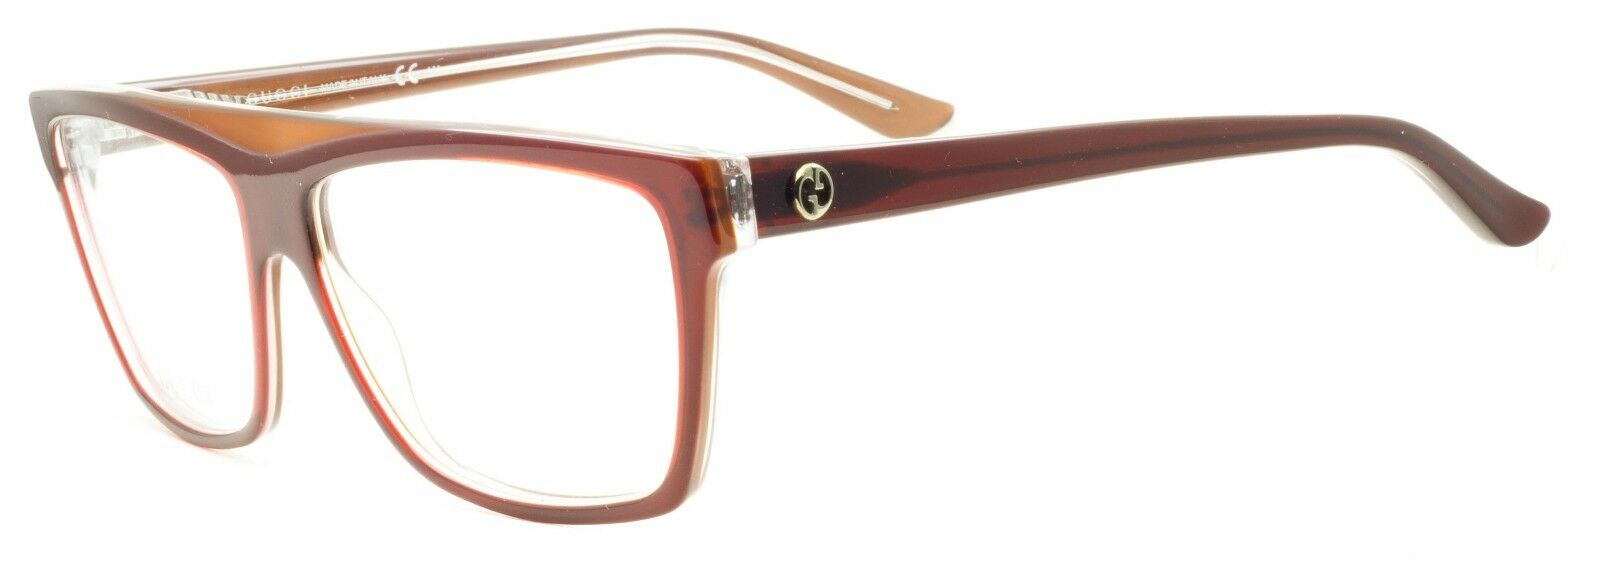 GUCCI GG 3545 5GJ Eyewear FRAMES NEW Glasses RX Optical Eyeglasses ITALY -  BNIB - GGV Eyewear